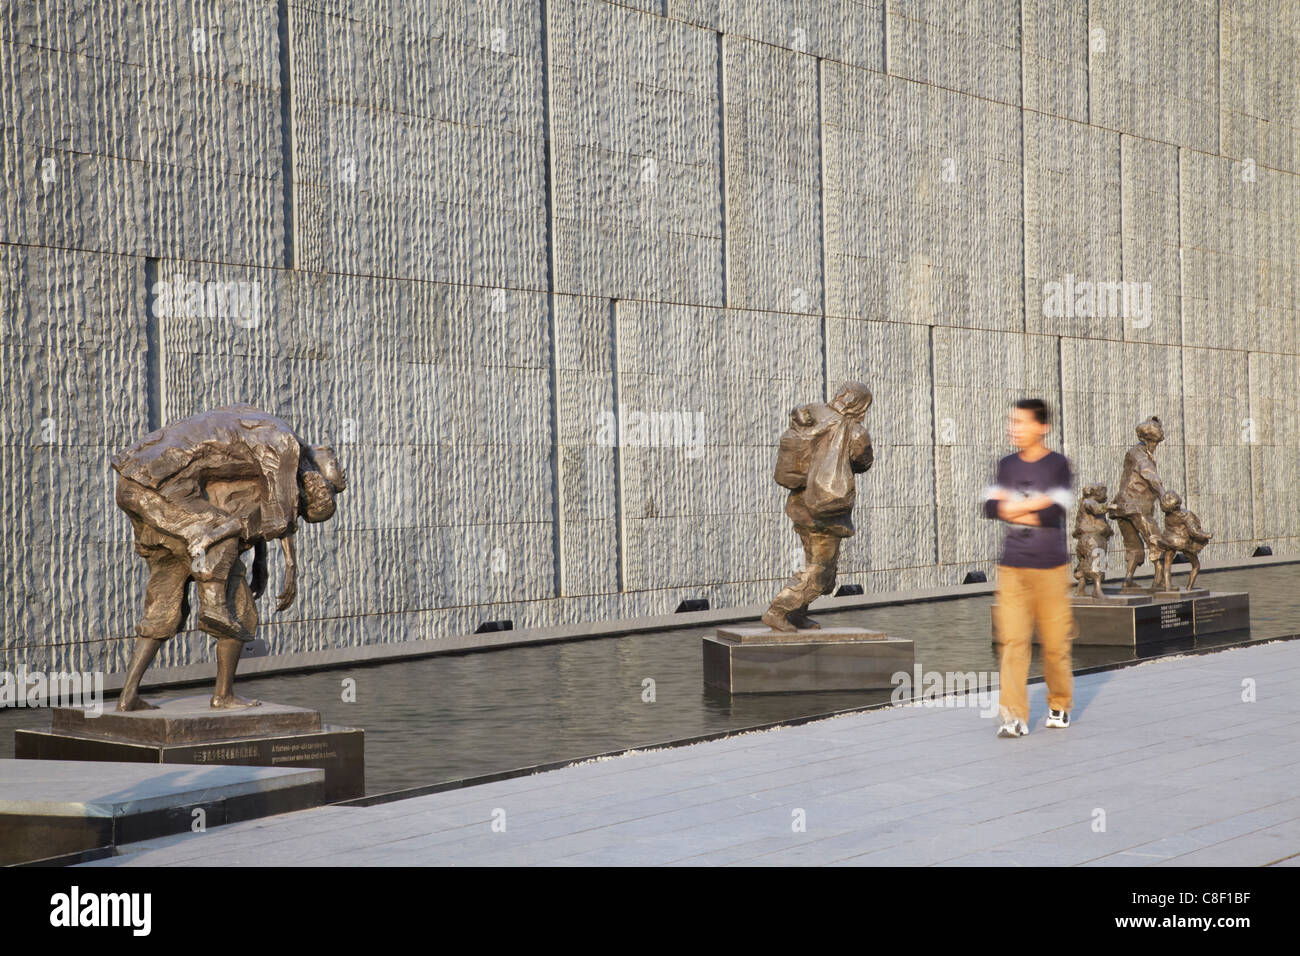 Man walking past statues at Memorial for the Nanjing Massacre, Nanjing, Jiangsu, China Stock Photo